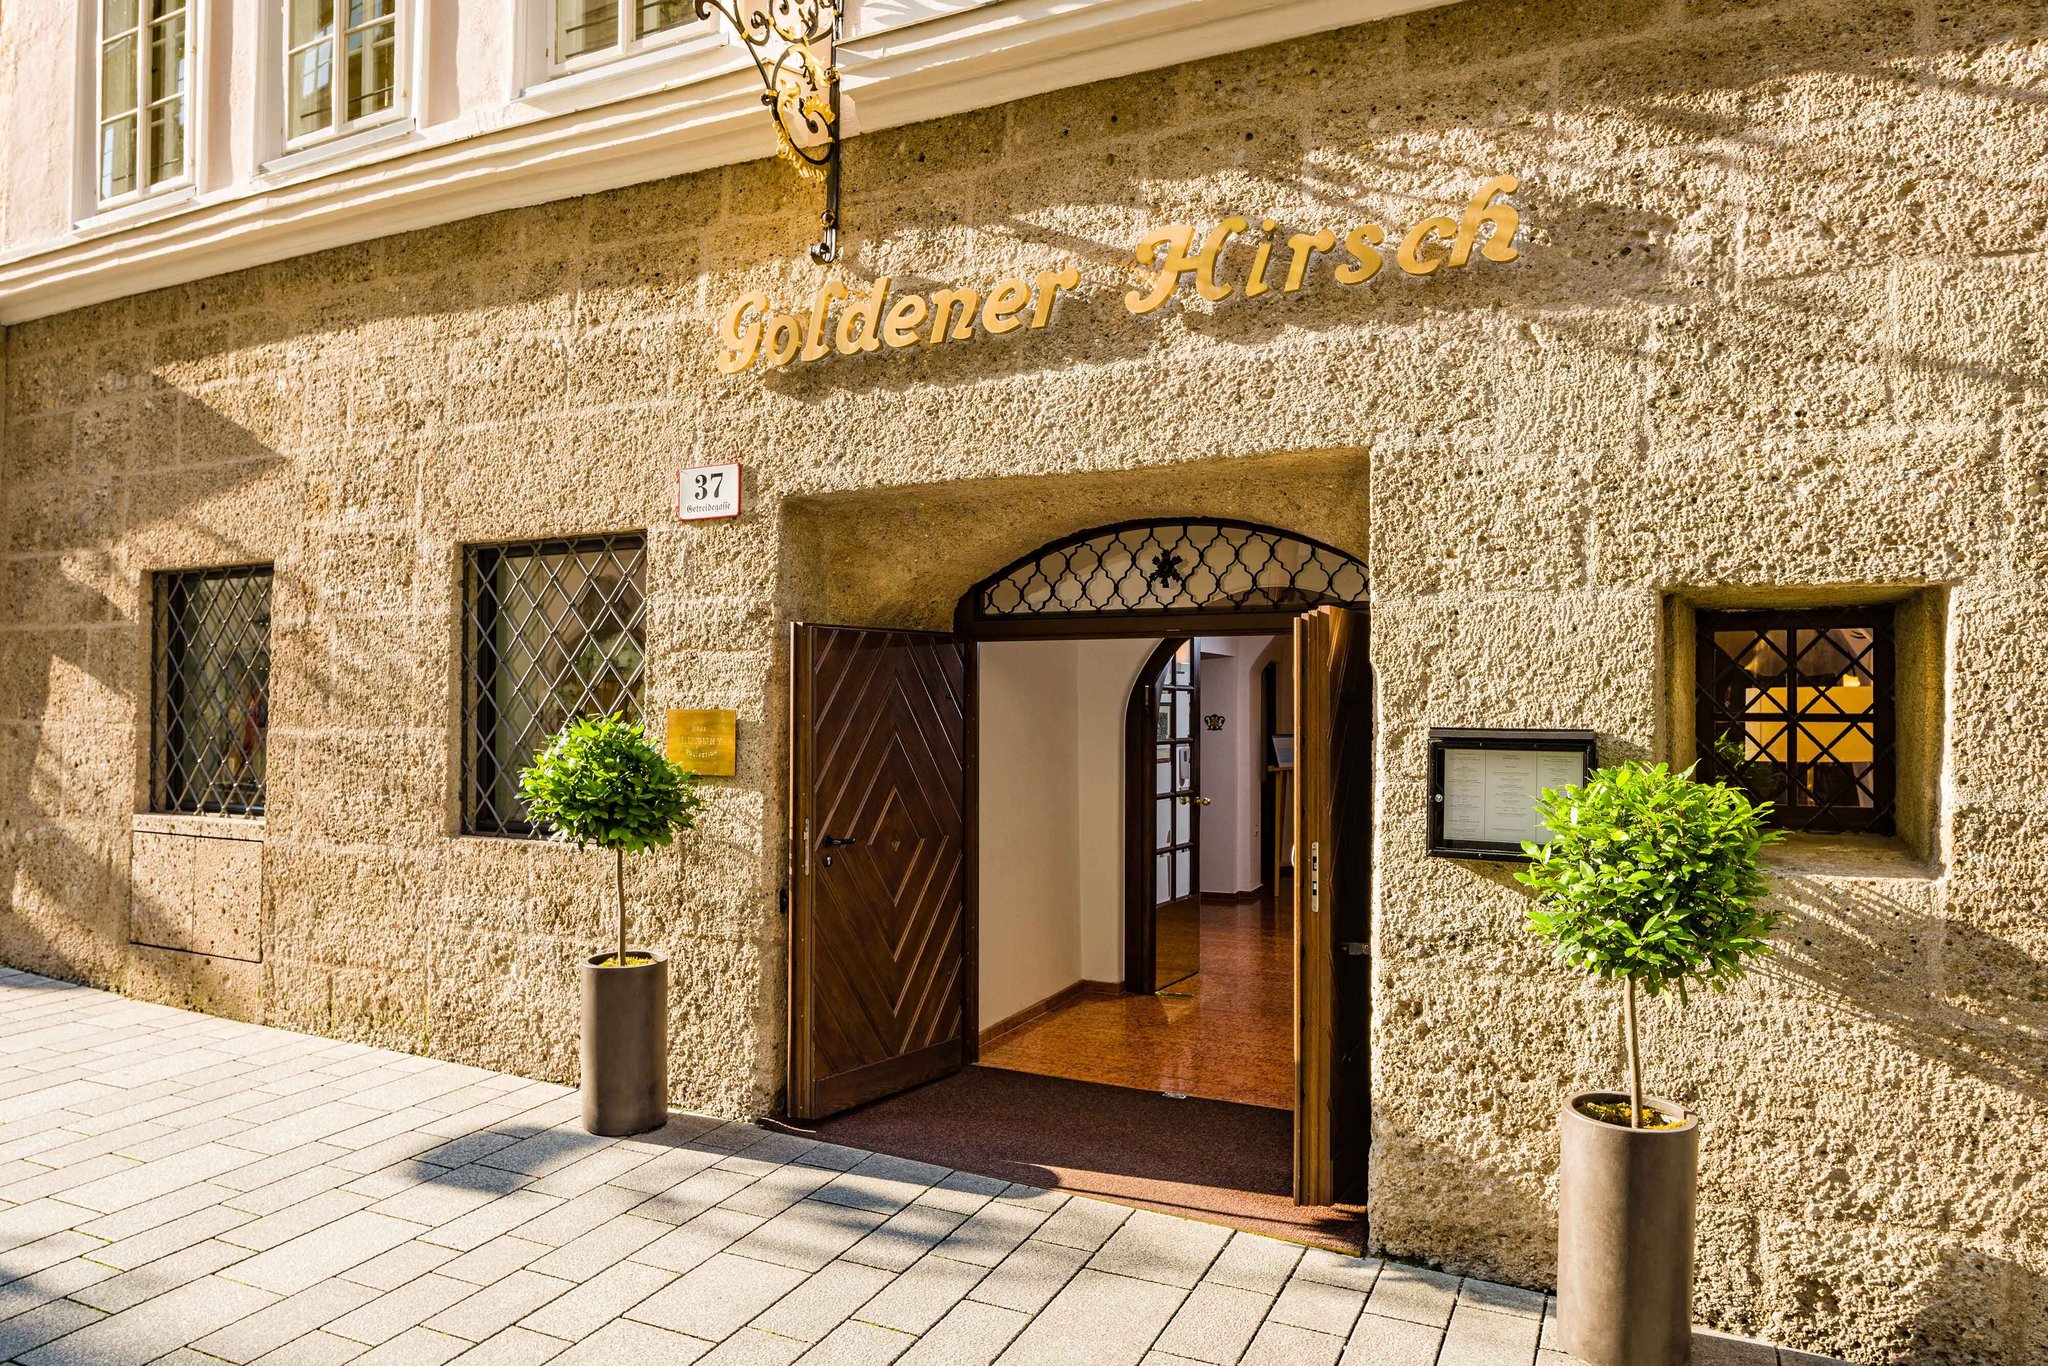 Hotel Goldener Hirsch a Luxury Collection Hotel Salzburg